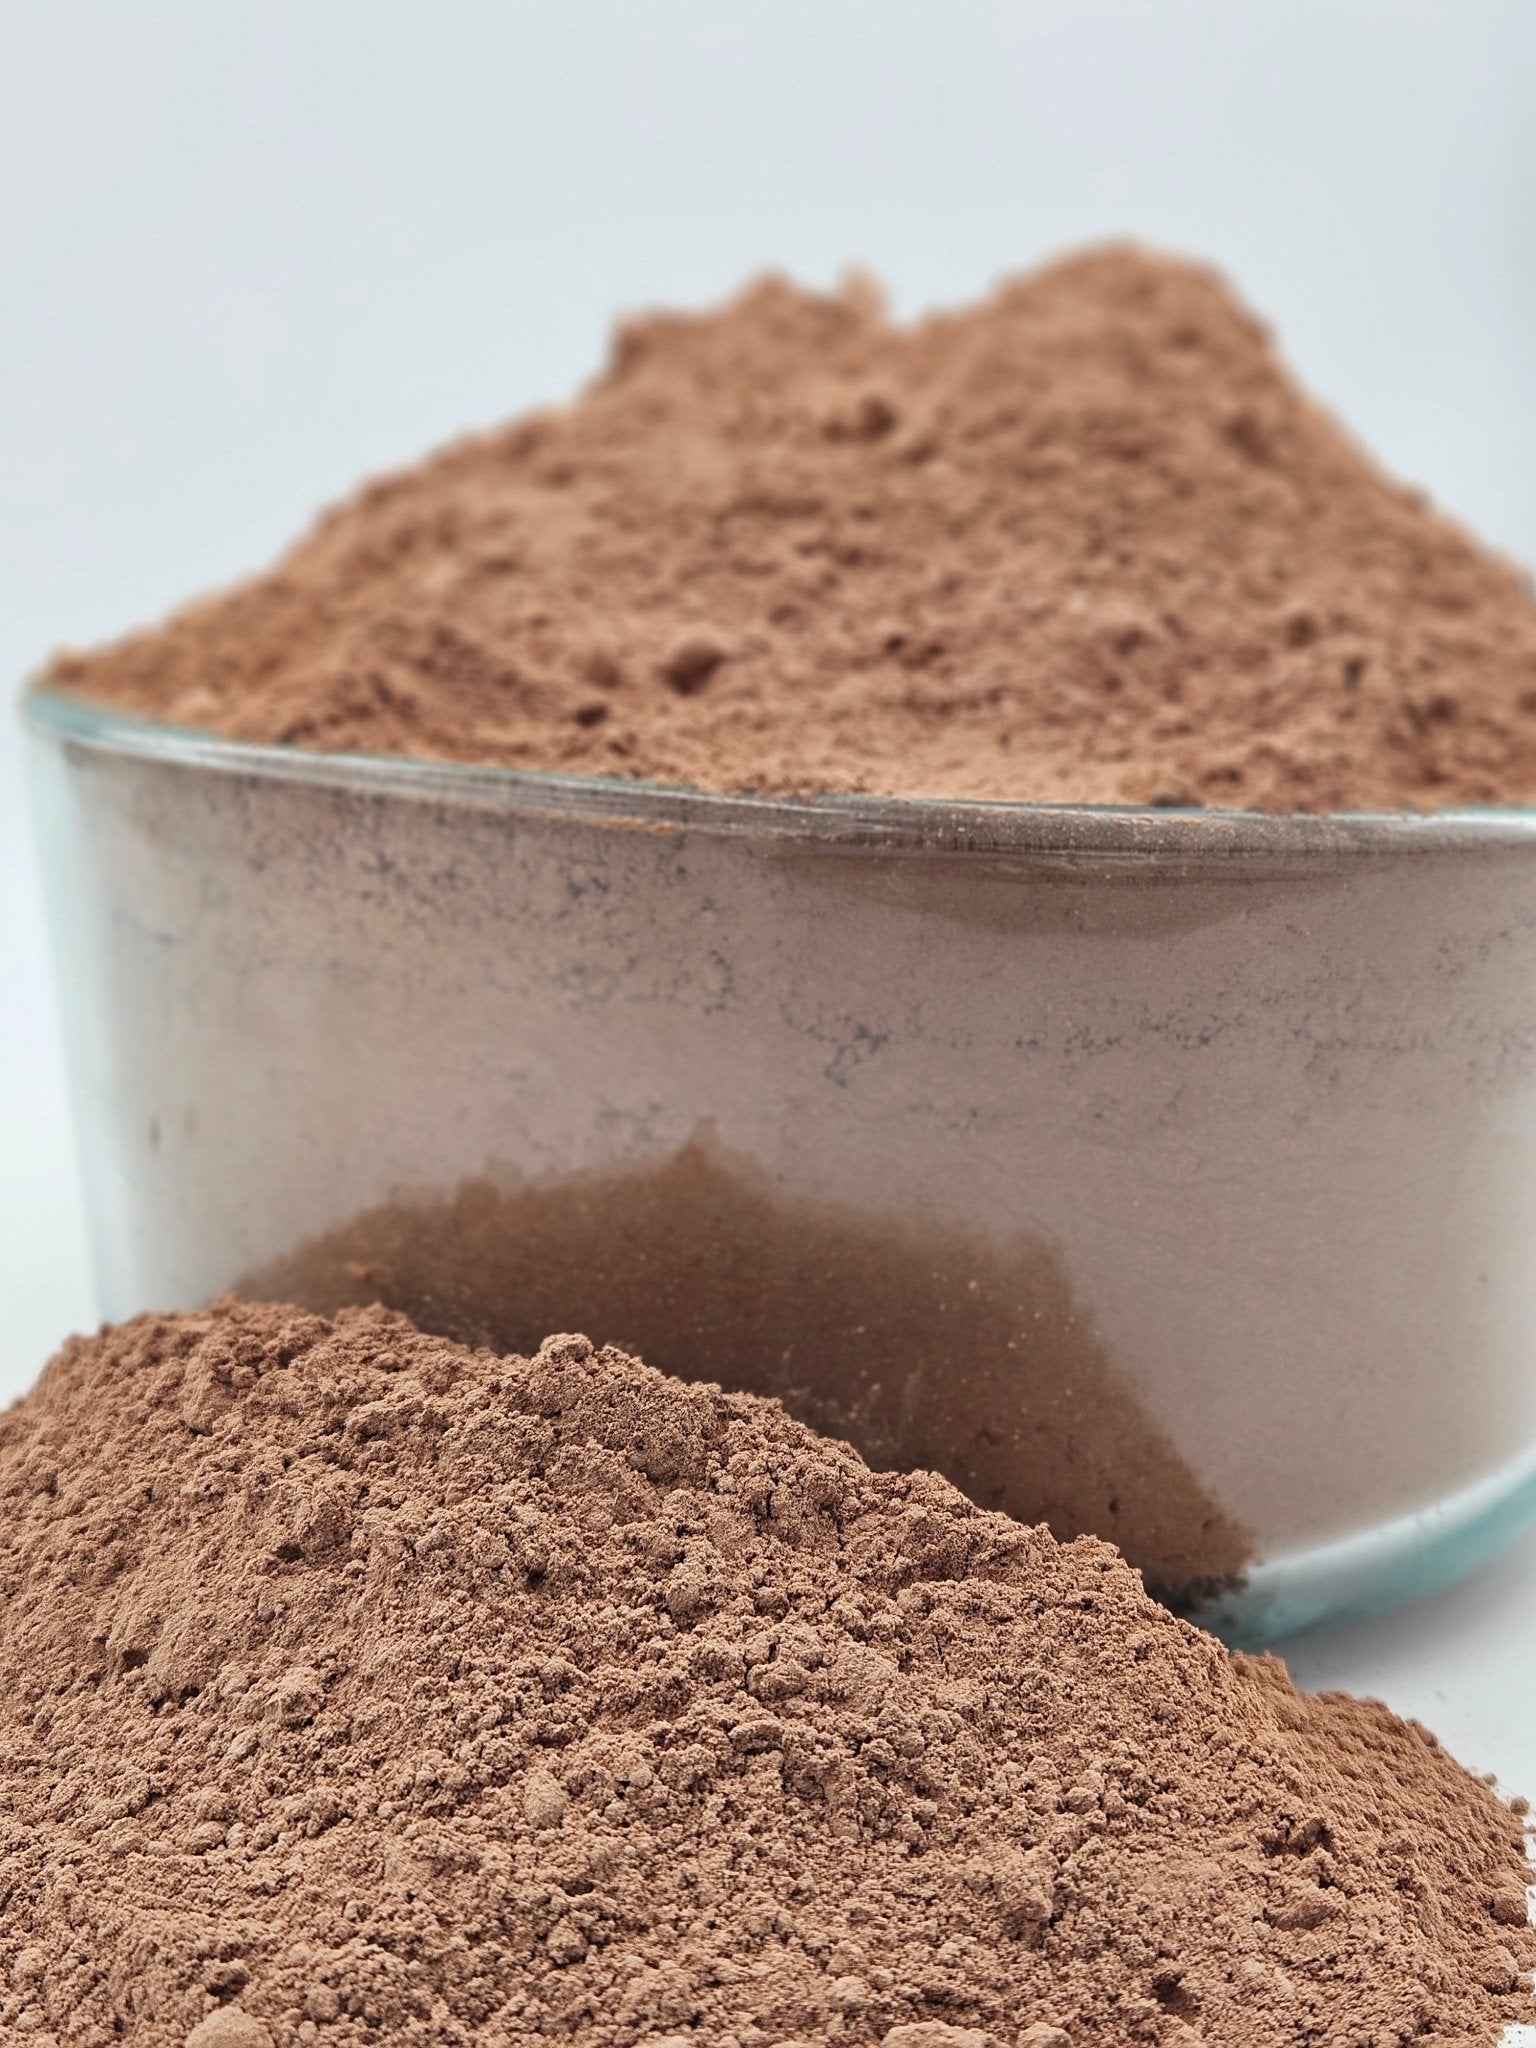 Raw Cacao Powder 16 oz - Criollo